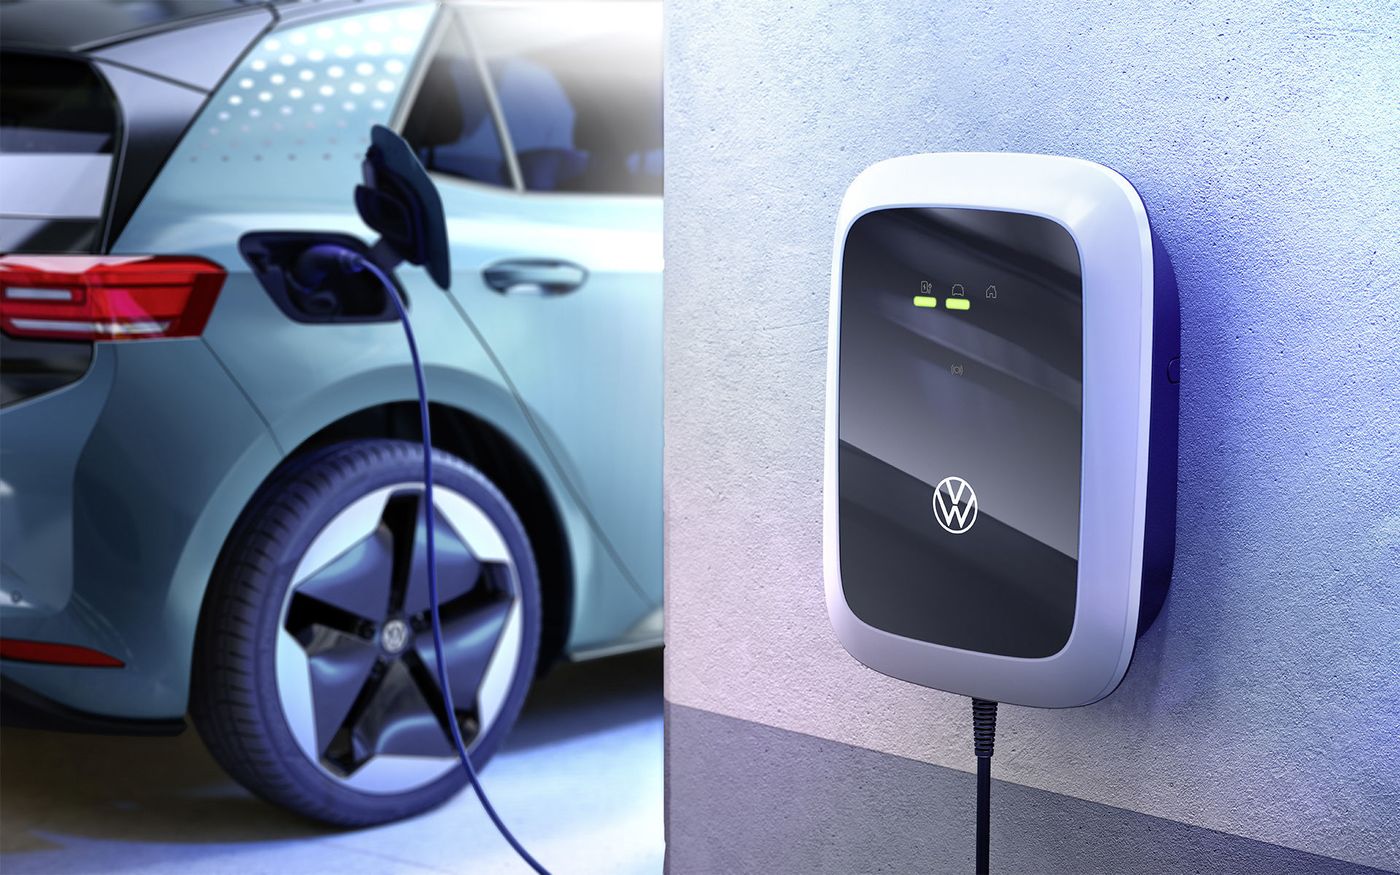 Borne de recharge à domicile - Volkswagen e-Golf - Forum Automobile Propre